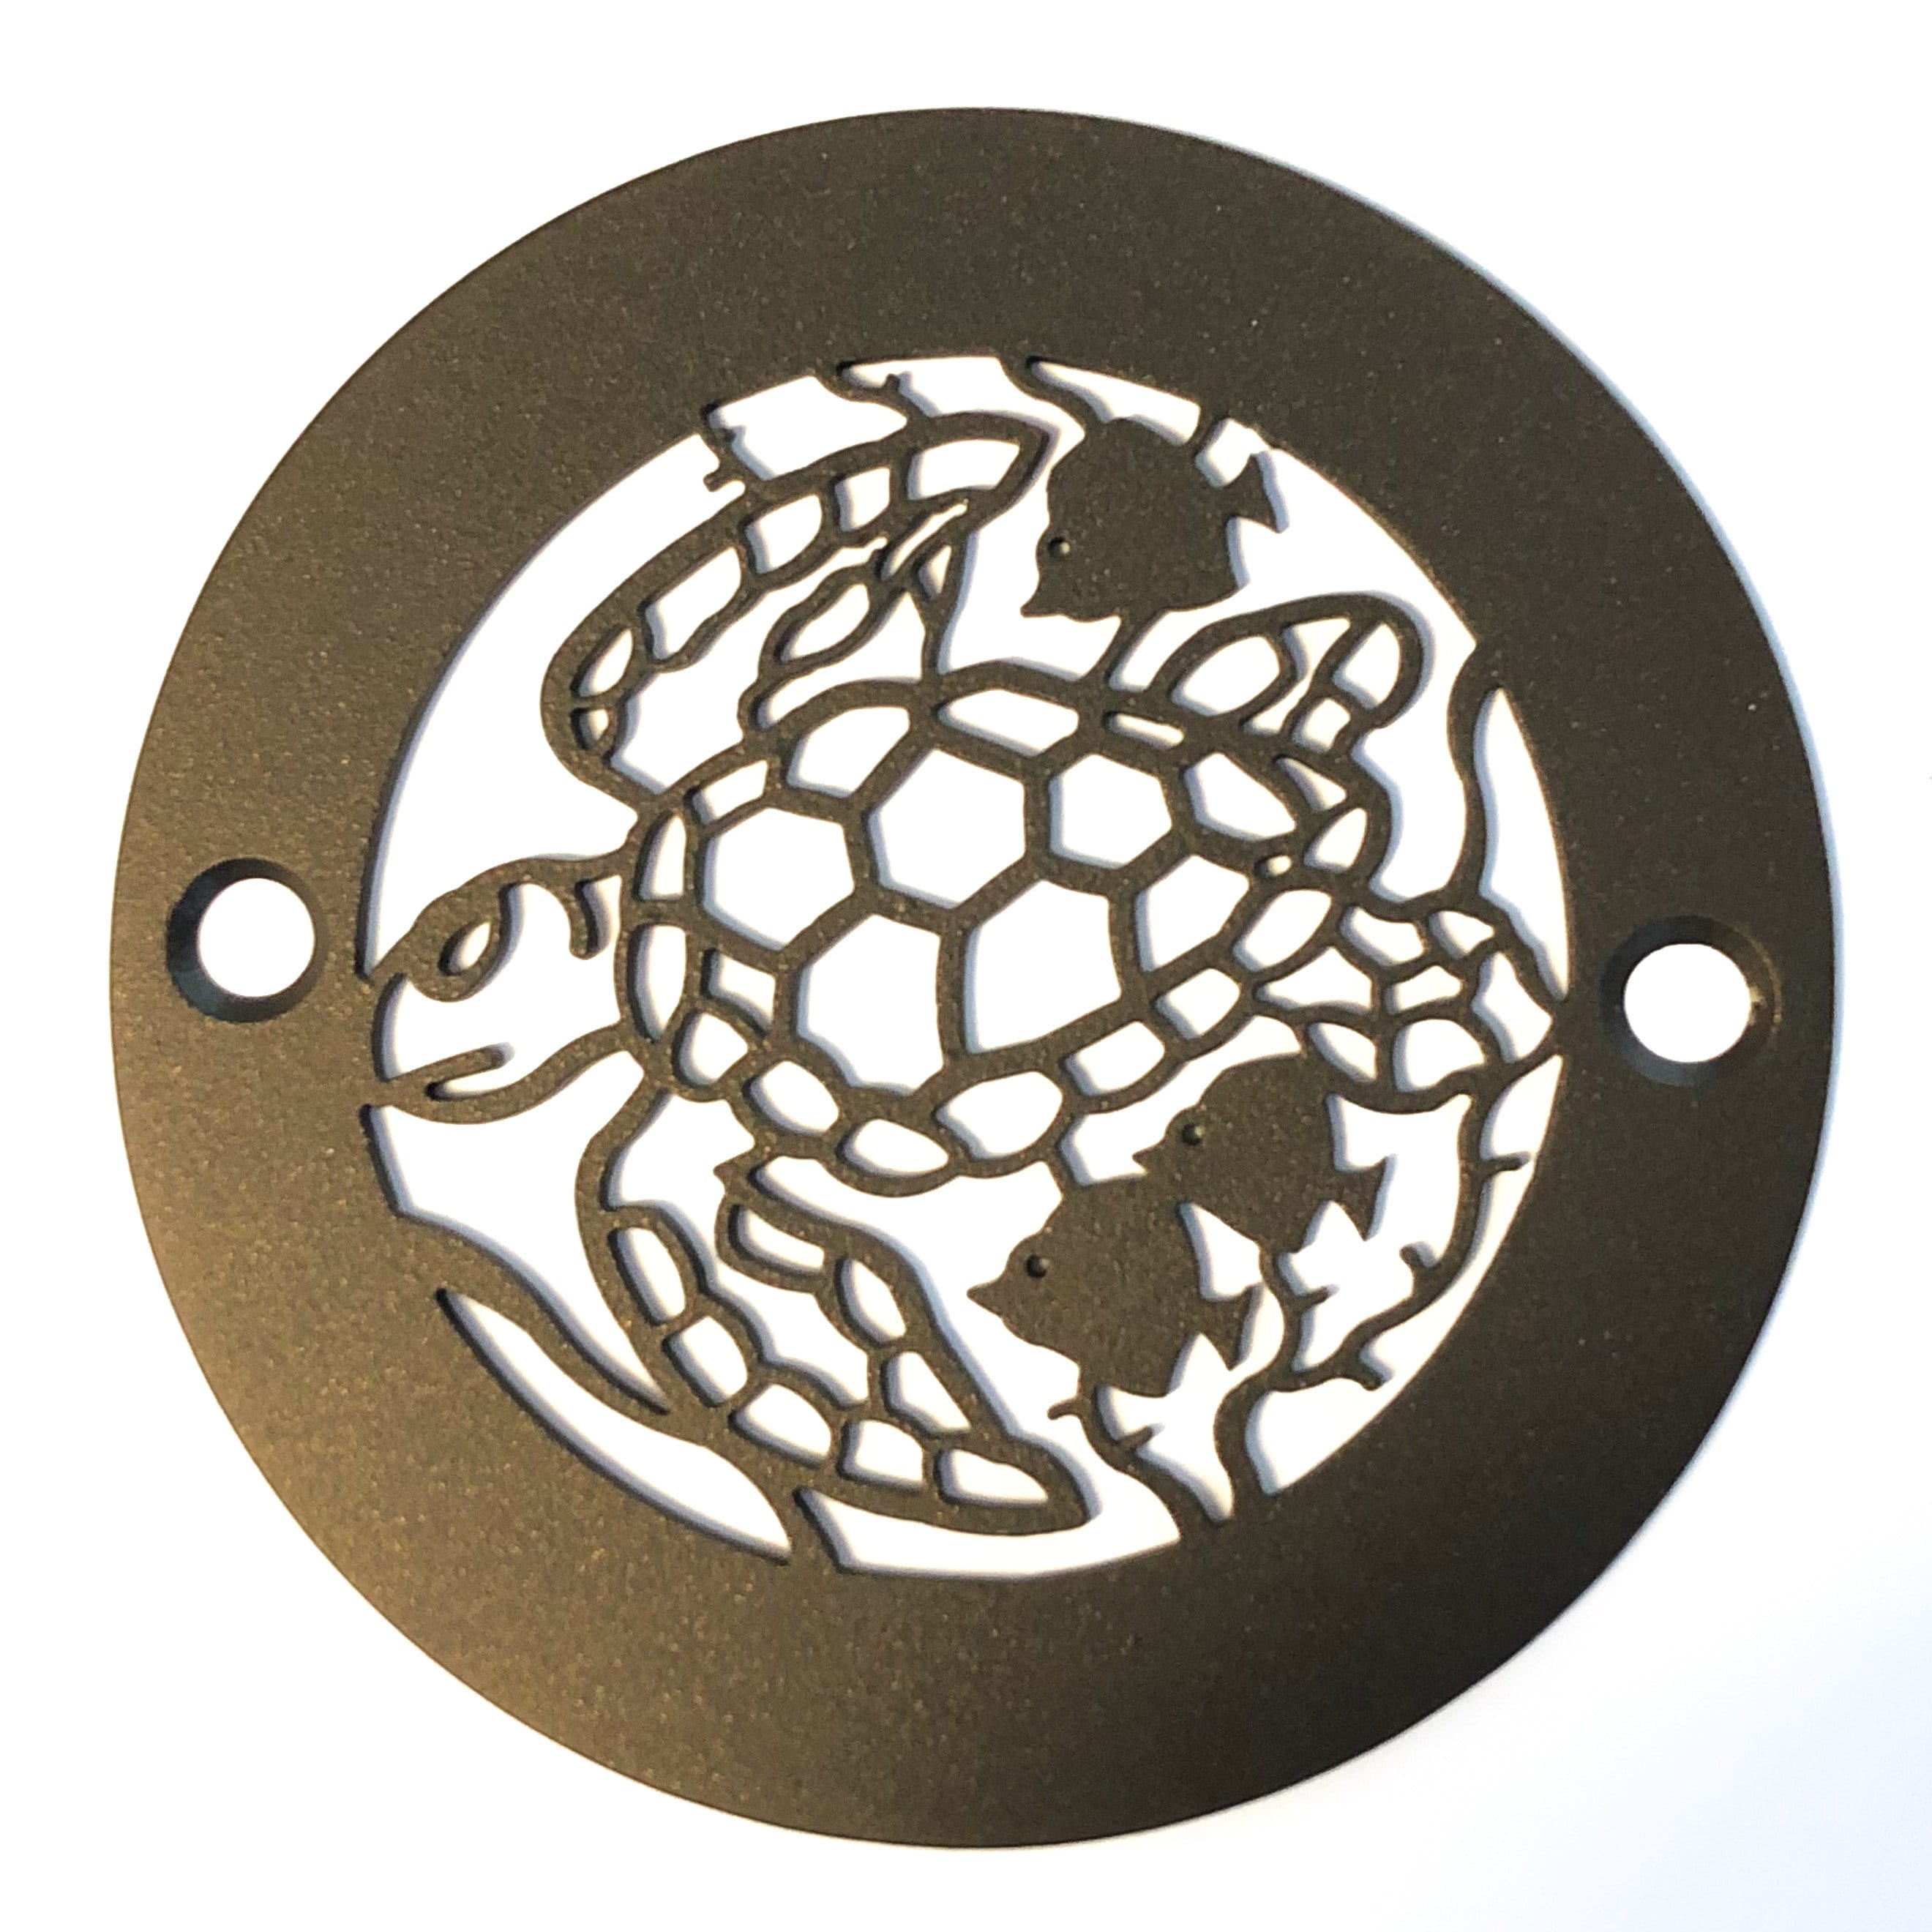 4 Inch Round Shower Drain Cover, Sea Turtle Design